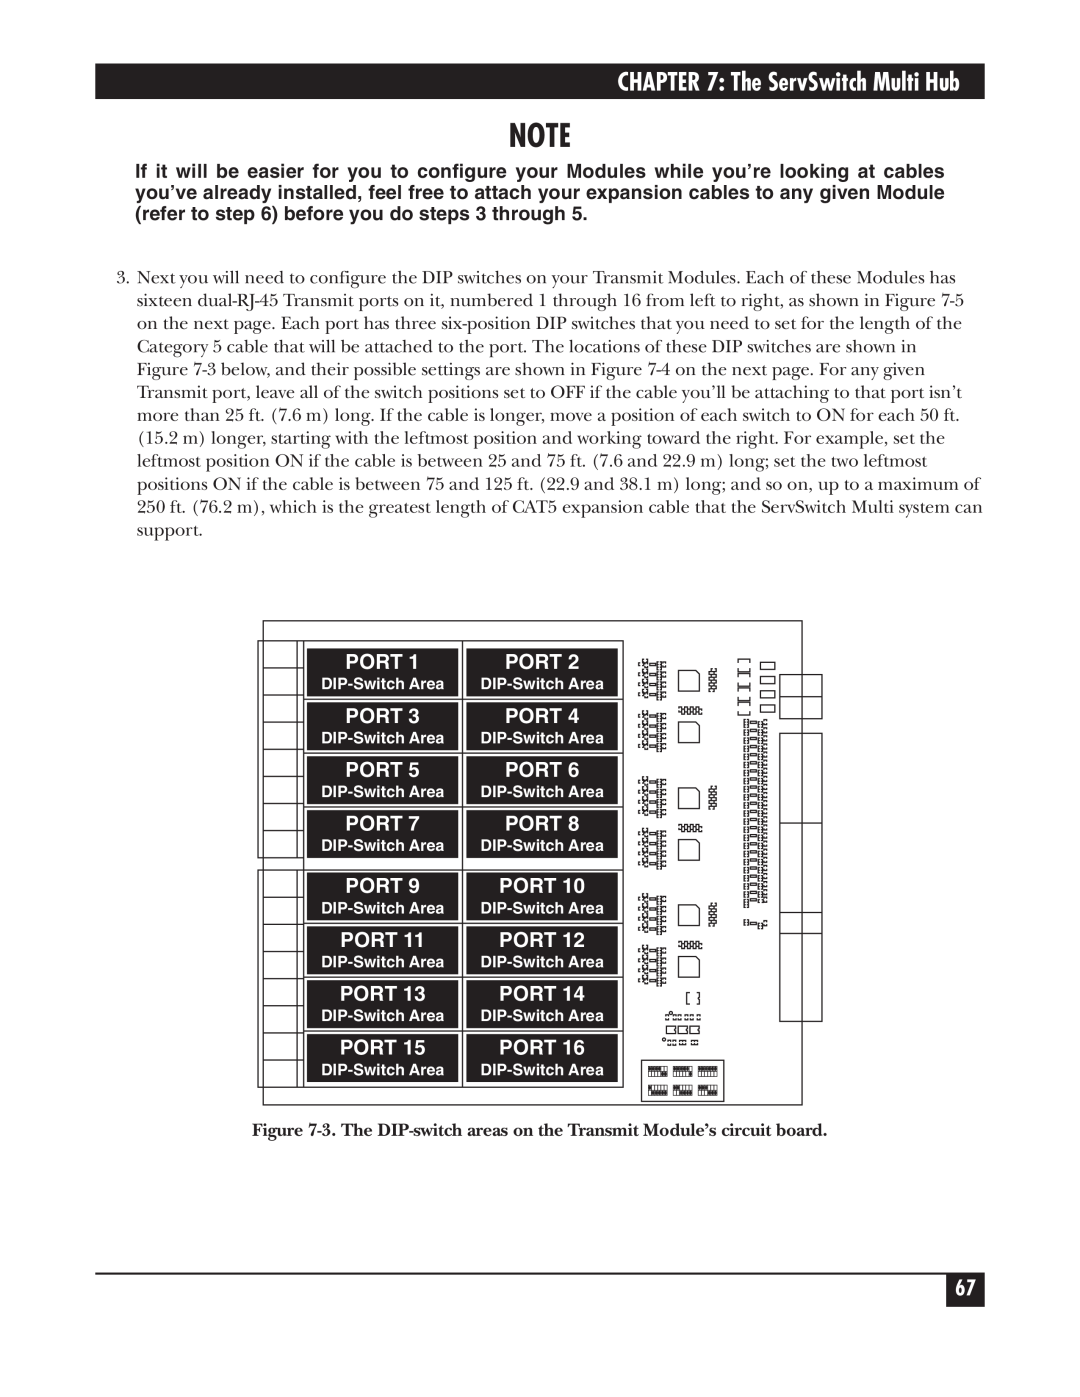 Black Box KV162A manual The ServSwitch Multi Hub, Port 